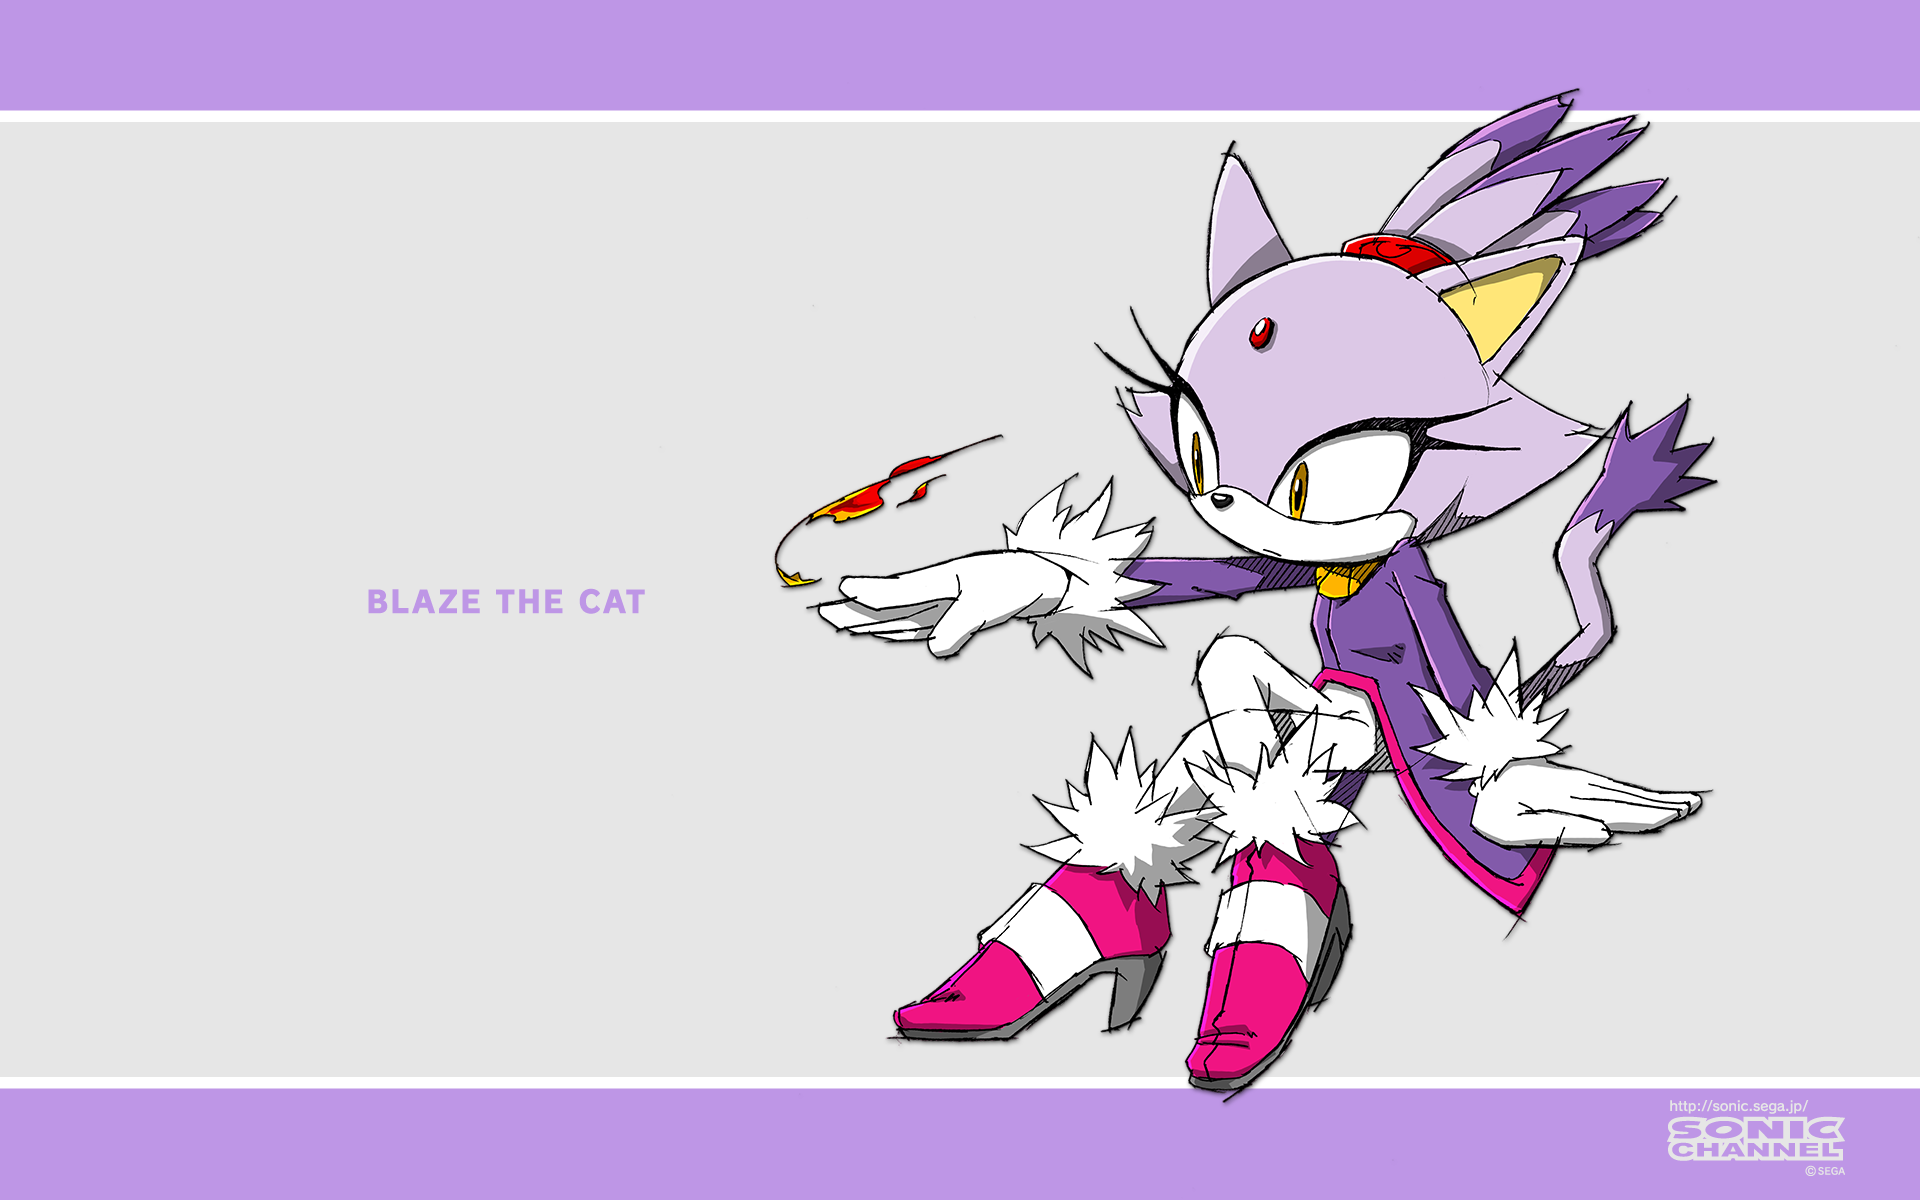 2011/08 - Blaze The Cat. 